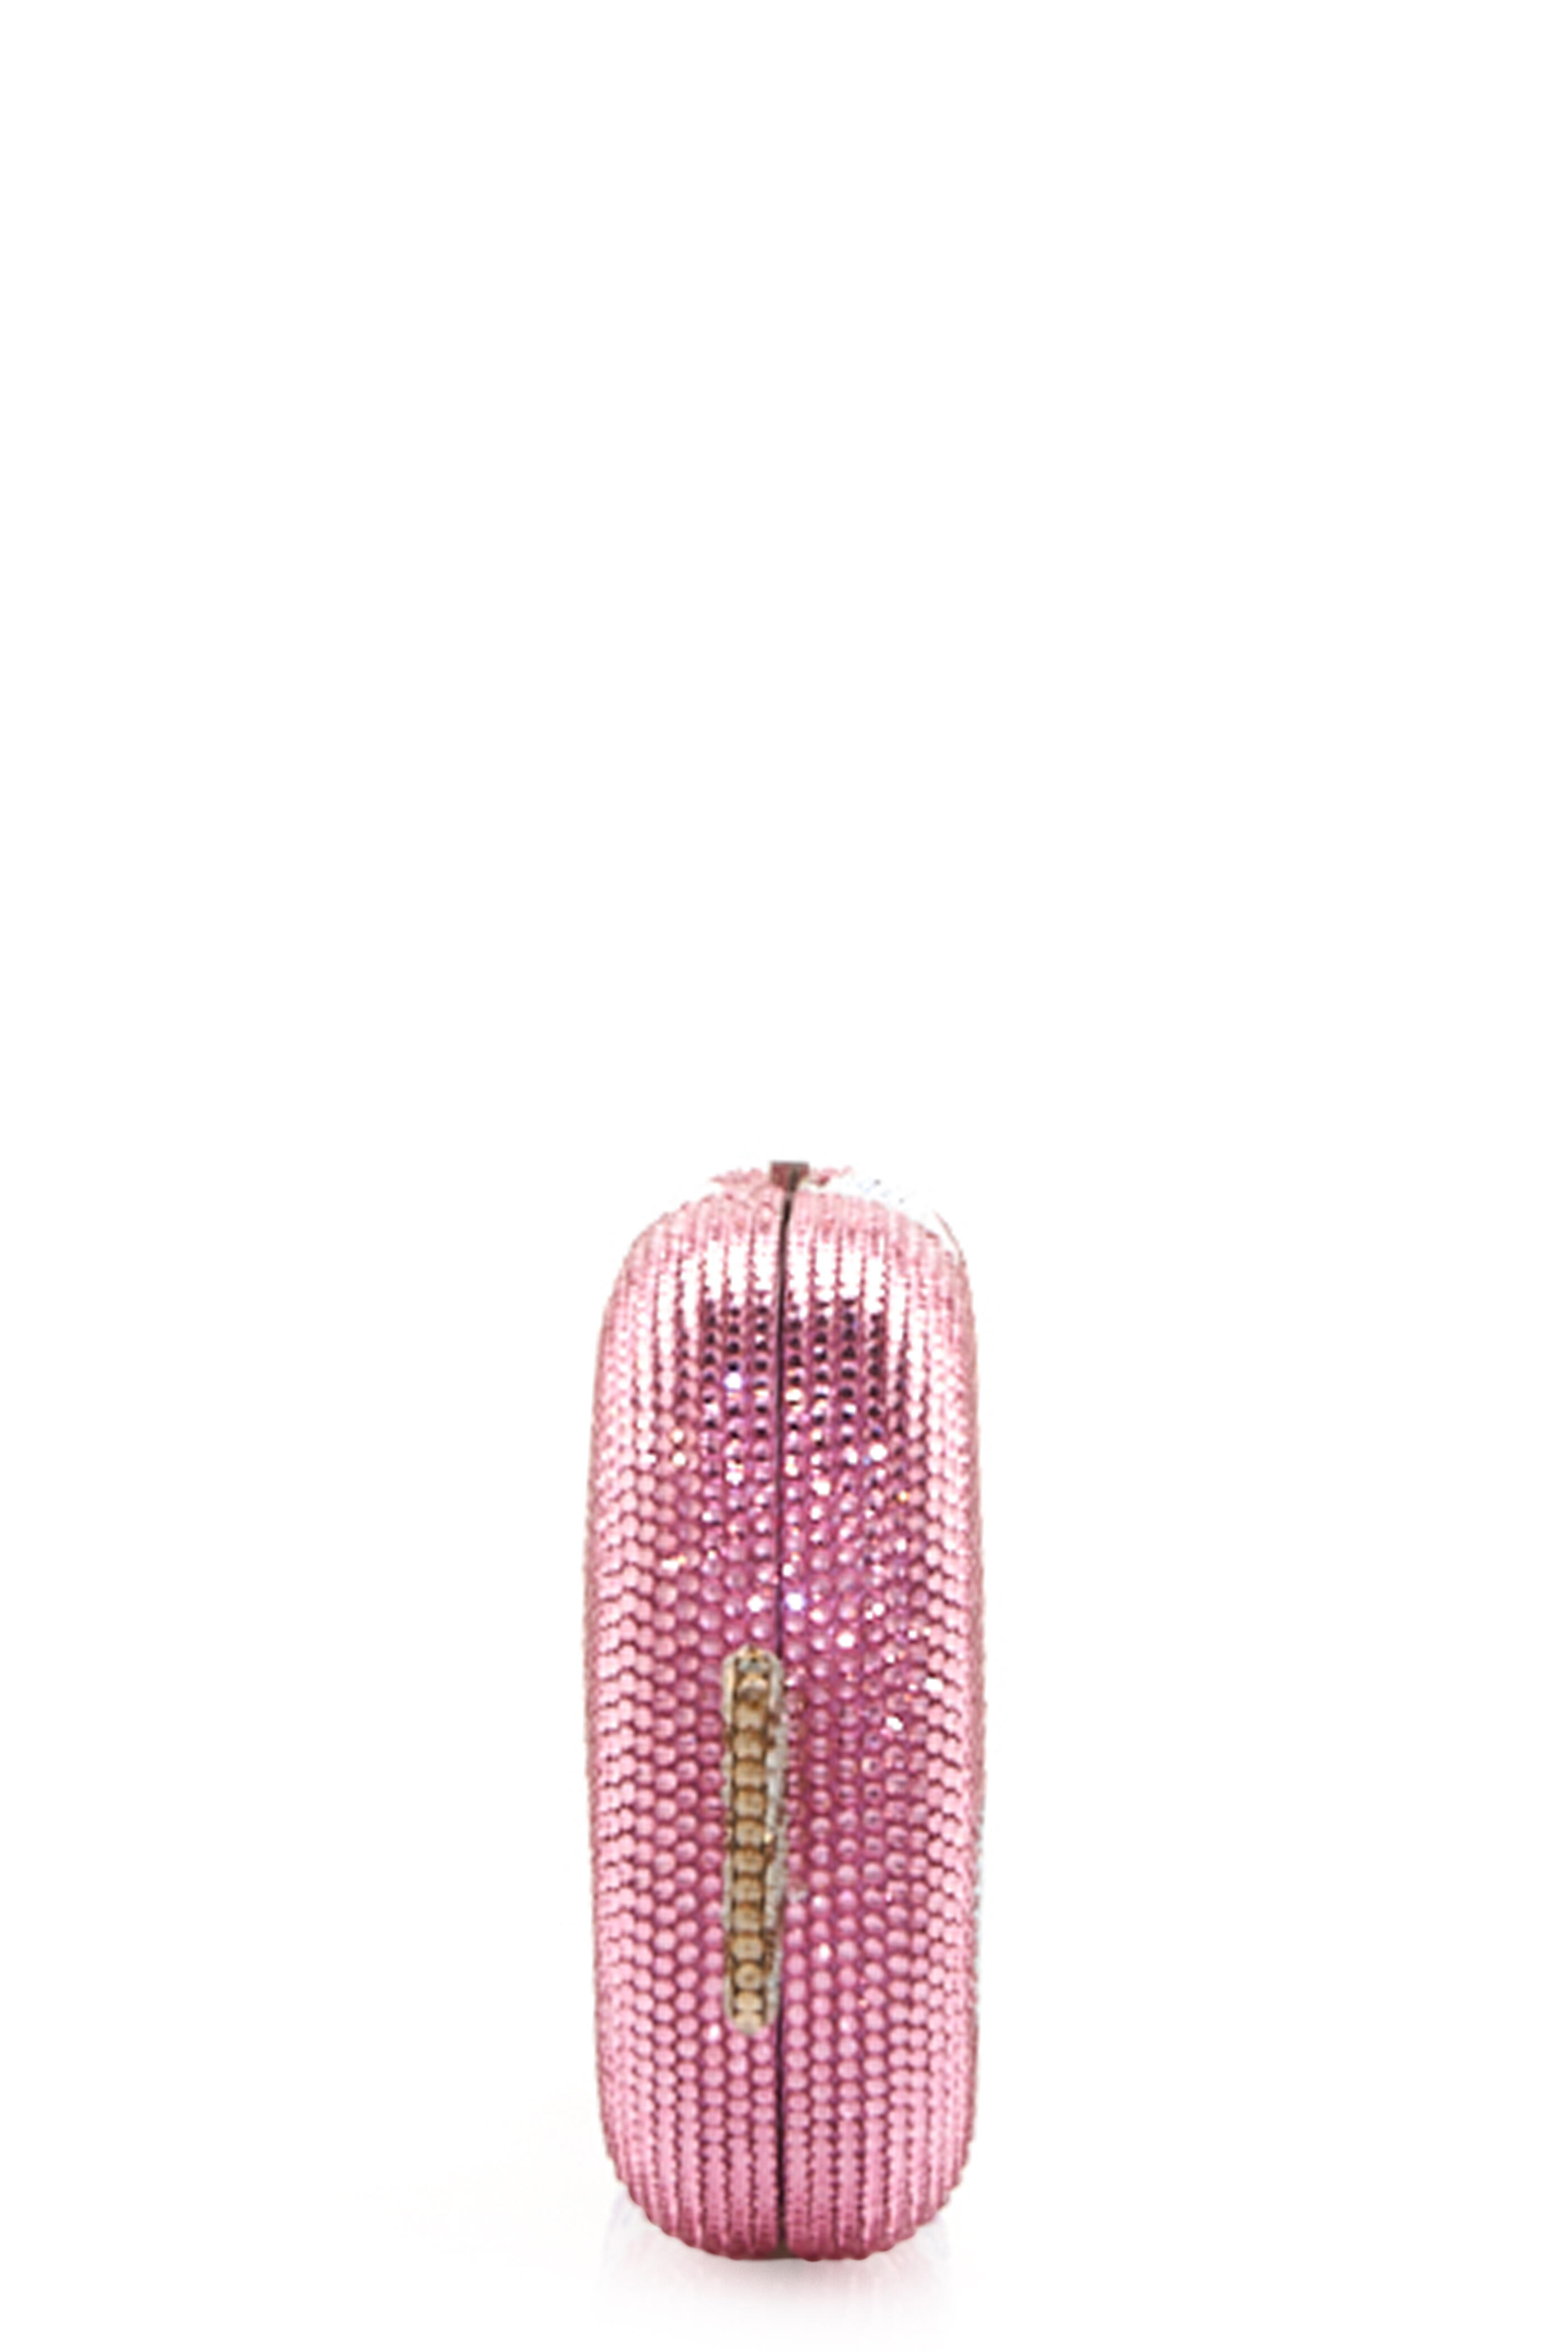 Judith Leiber crystal-embellished Rose Clutch Bag - Pink - One Size